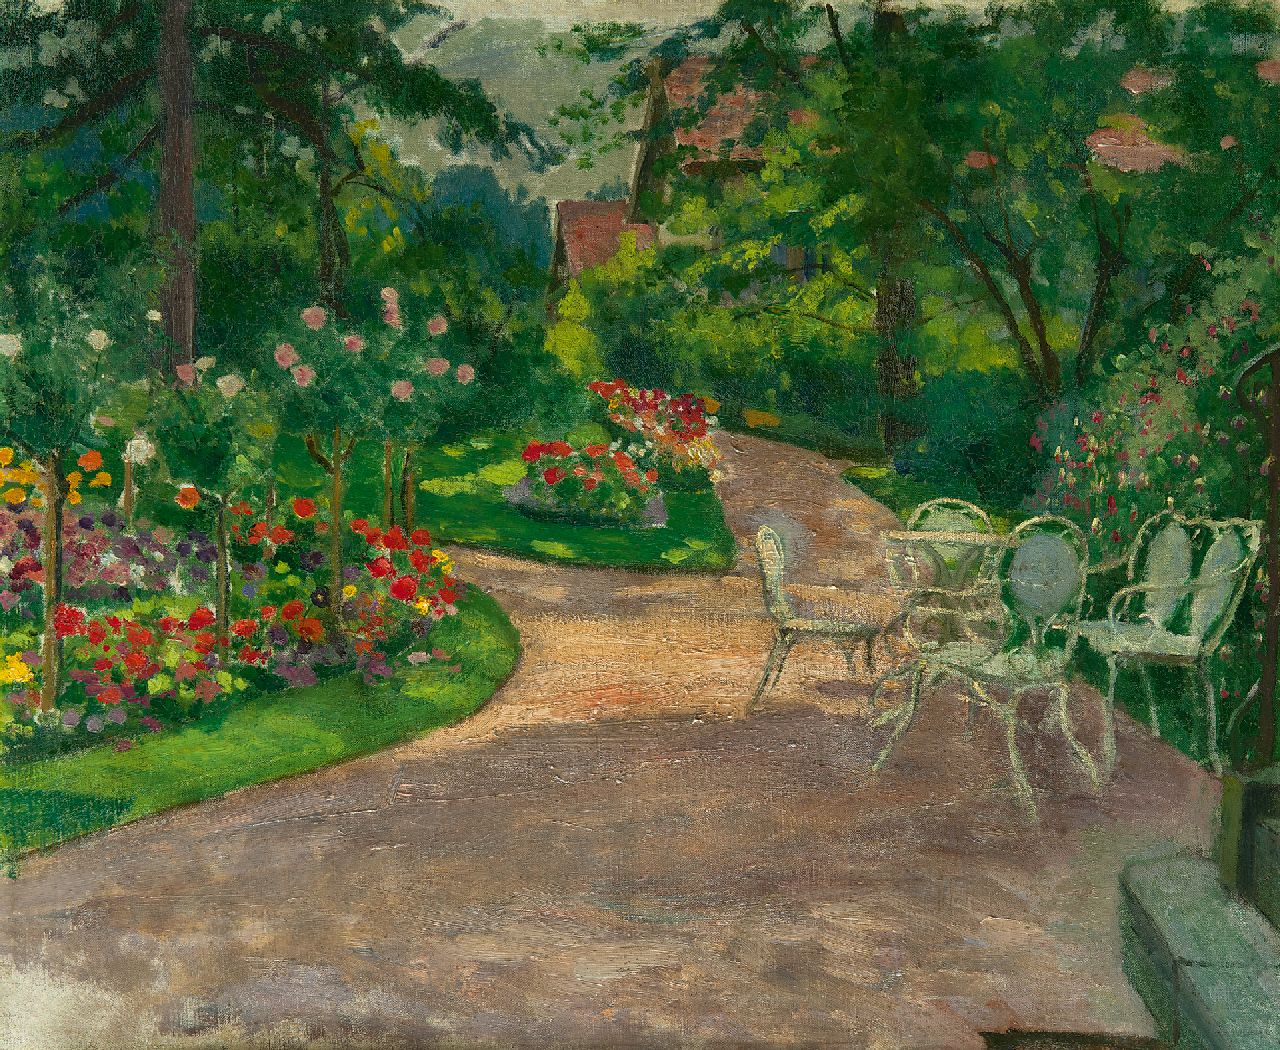 Sachsen M.M.A. von | Mathilde Marie Auguste von Sachsen, Tuin in de zomer, olieverf op doek 46,3 x 56,2 cm